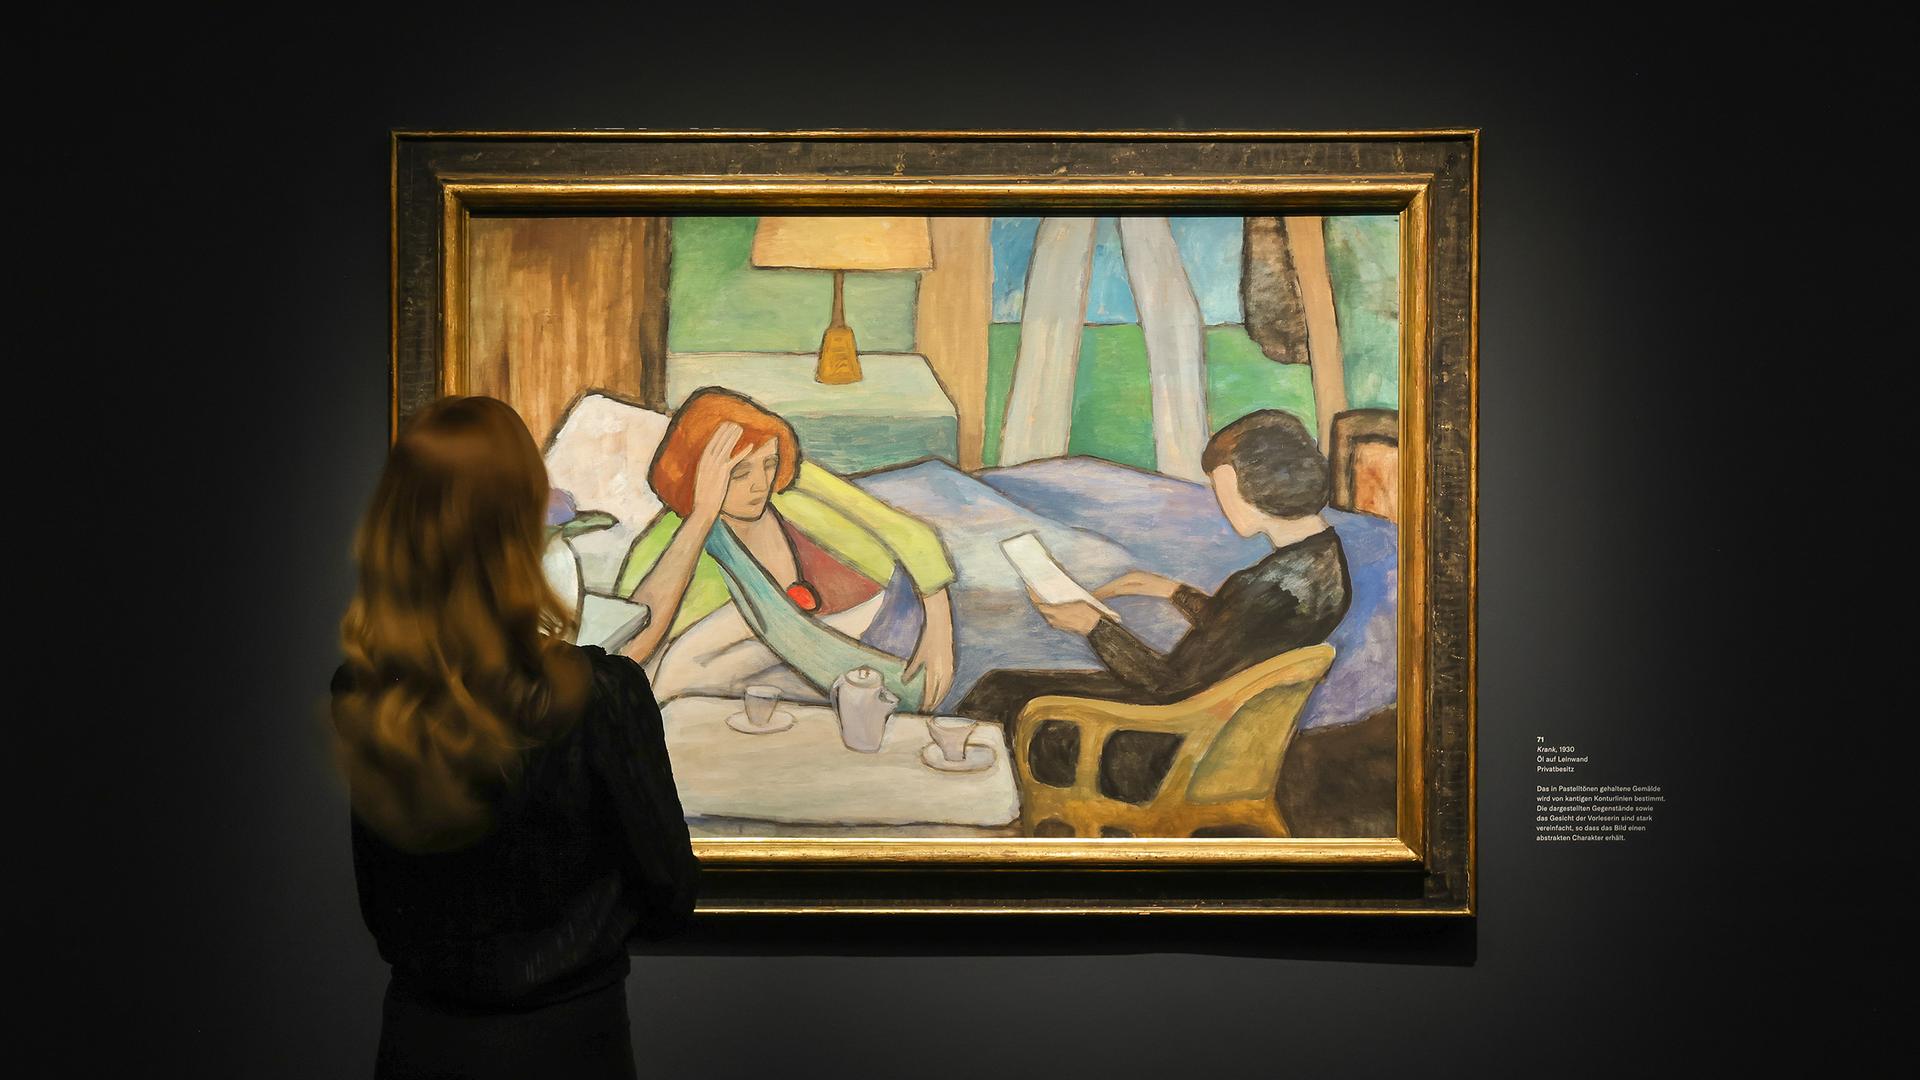 Eine Frau schaut sich ein Gemälde von Gabriele Münter in der Ausstellung "Menschenbilder" im Bucerius Kunst Forum in Hamburg an. Das Gemälde zeigt eine Frau, die halb unter Decken liegt und sich mit der rechten Hand hochstützt, sodass ihr Oberkörper seitlich aufgerichtet ist. Eine andere Frau liest in einem Brief.